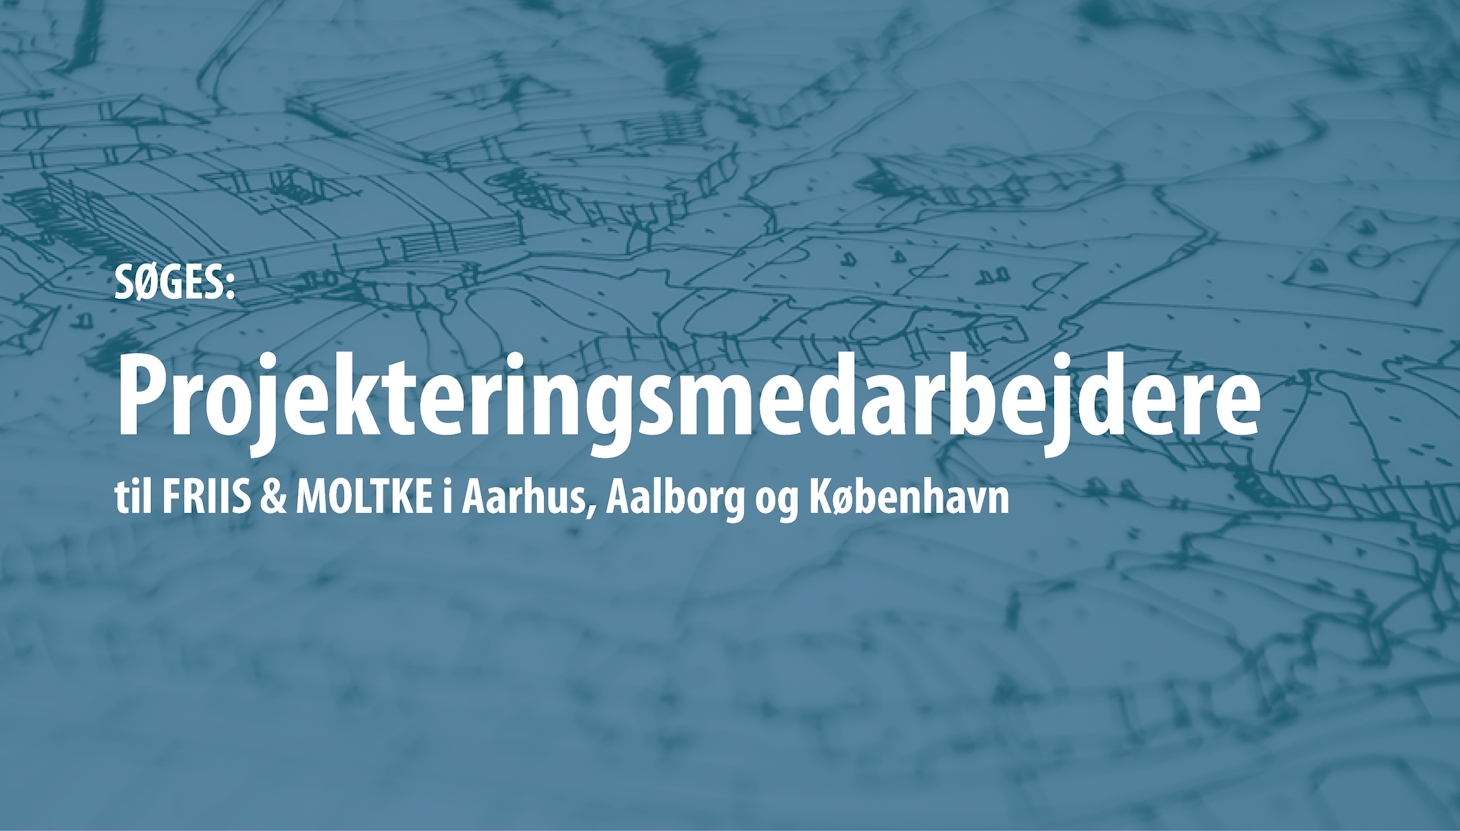 SØGES: Projekteringsmedarbejdere i Aarhus, Aalborg og København (1)